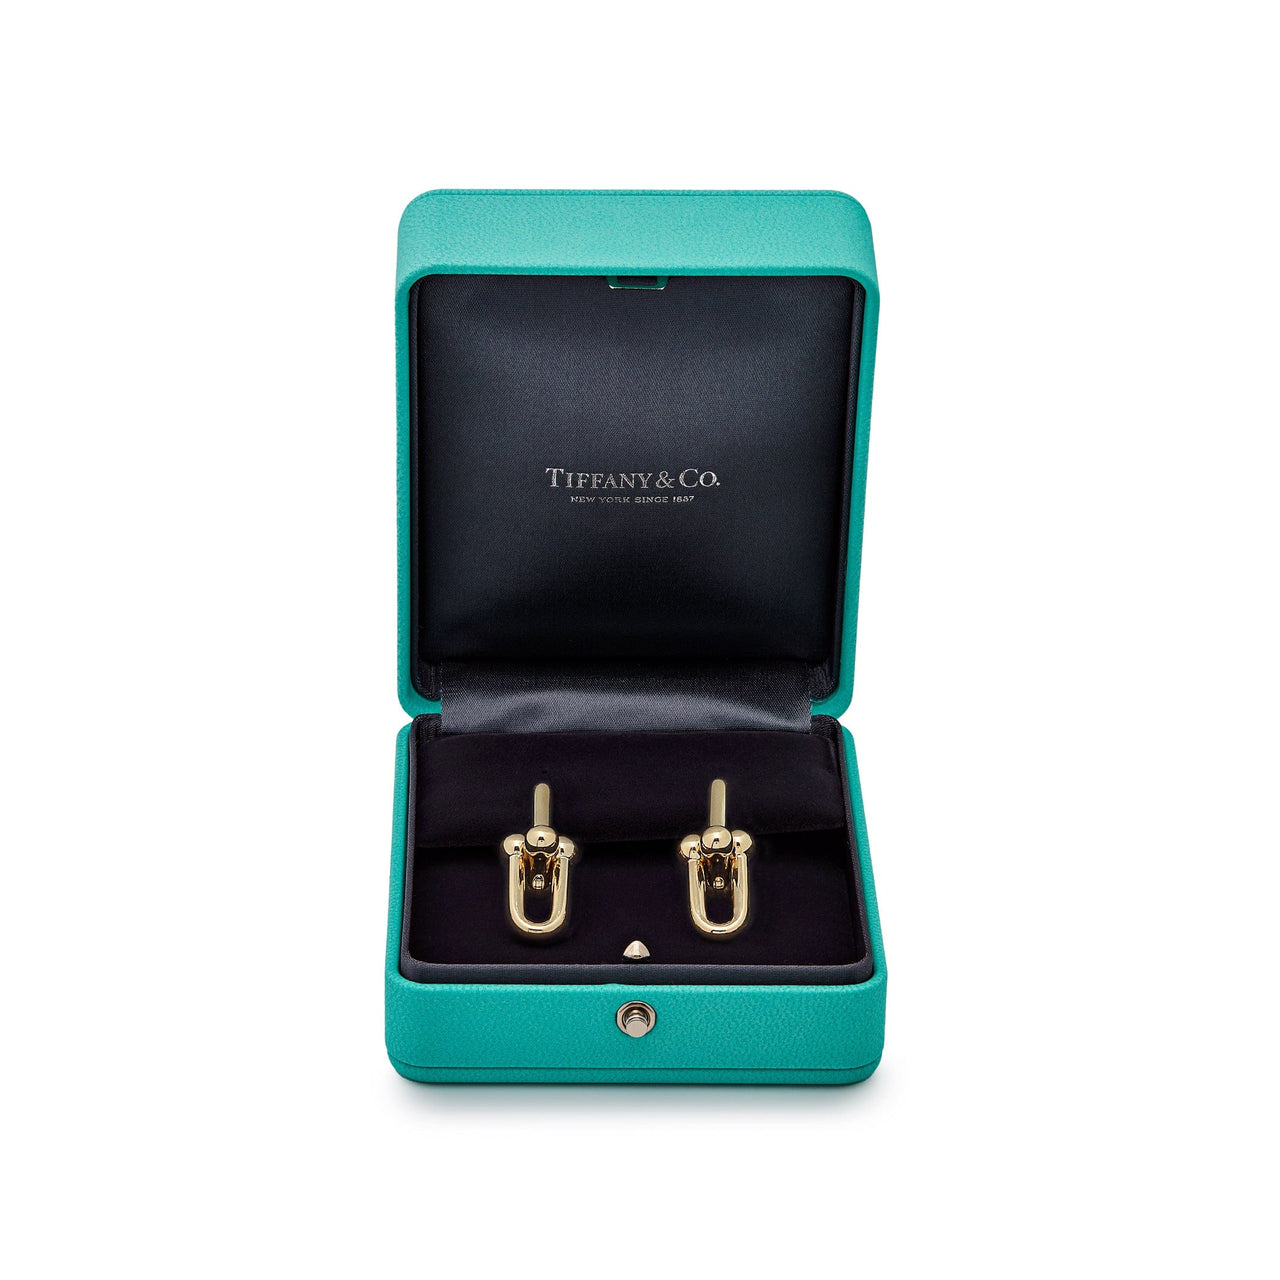 Tiffany & Co. HardWear Large Link Earrings in Yellow Gold 68533651